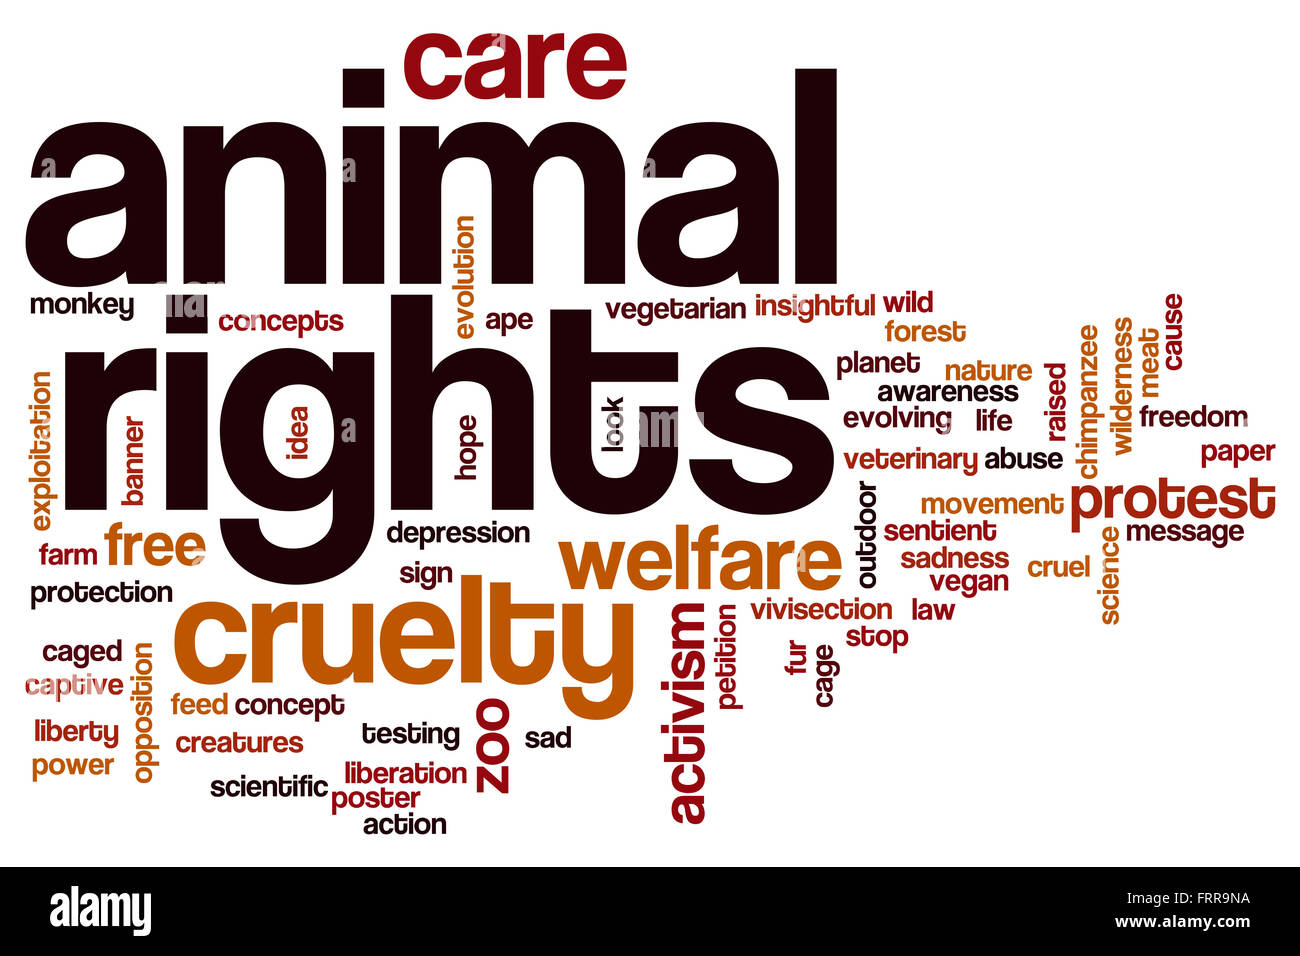 Animal Rights mot concept cloud Banque D'Images